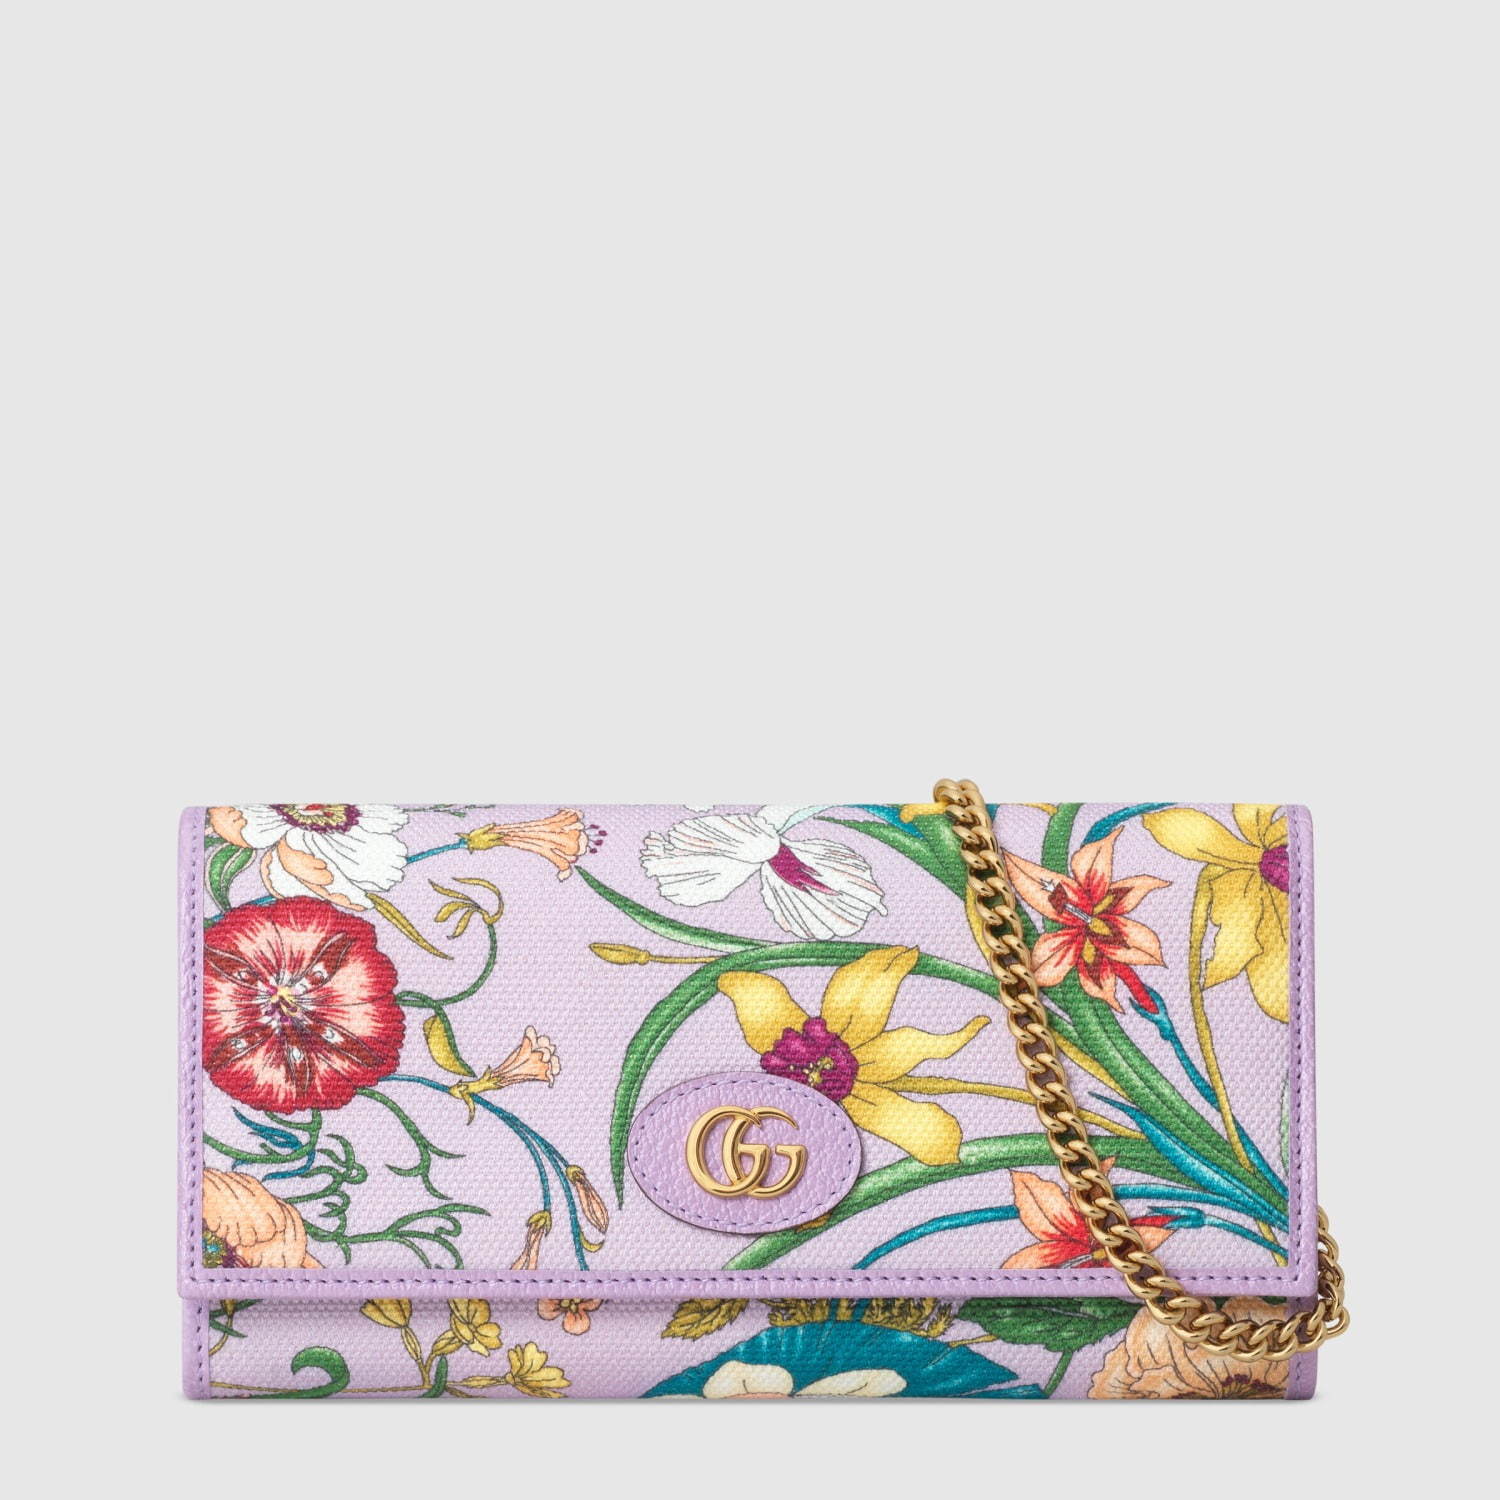 グッチから、花々が踊り咲くフローラ プリントの日本限定バッグ